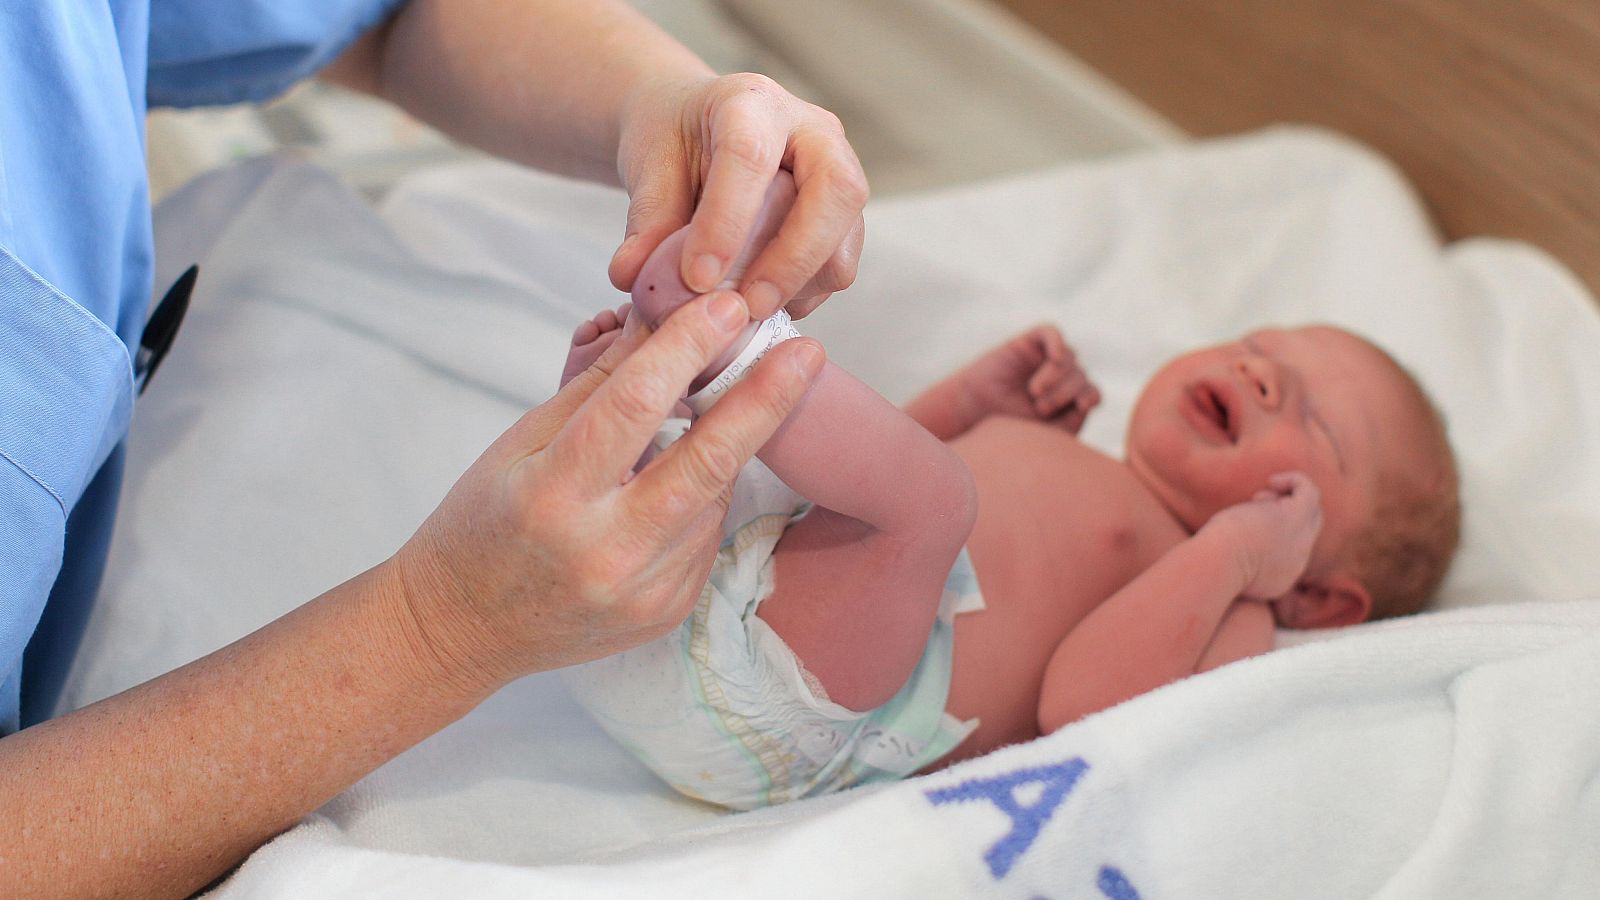 Un sanitario realiza la prueba del talón a un bebé